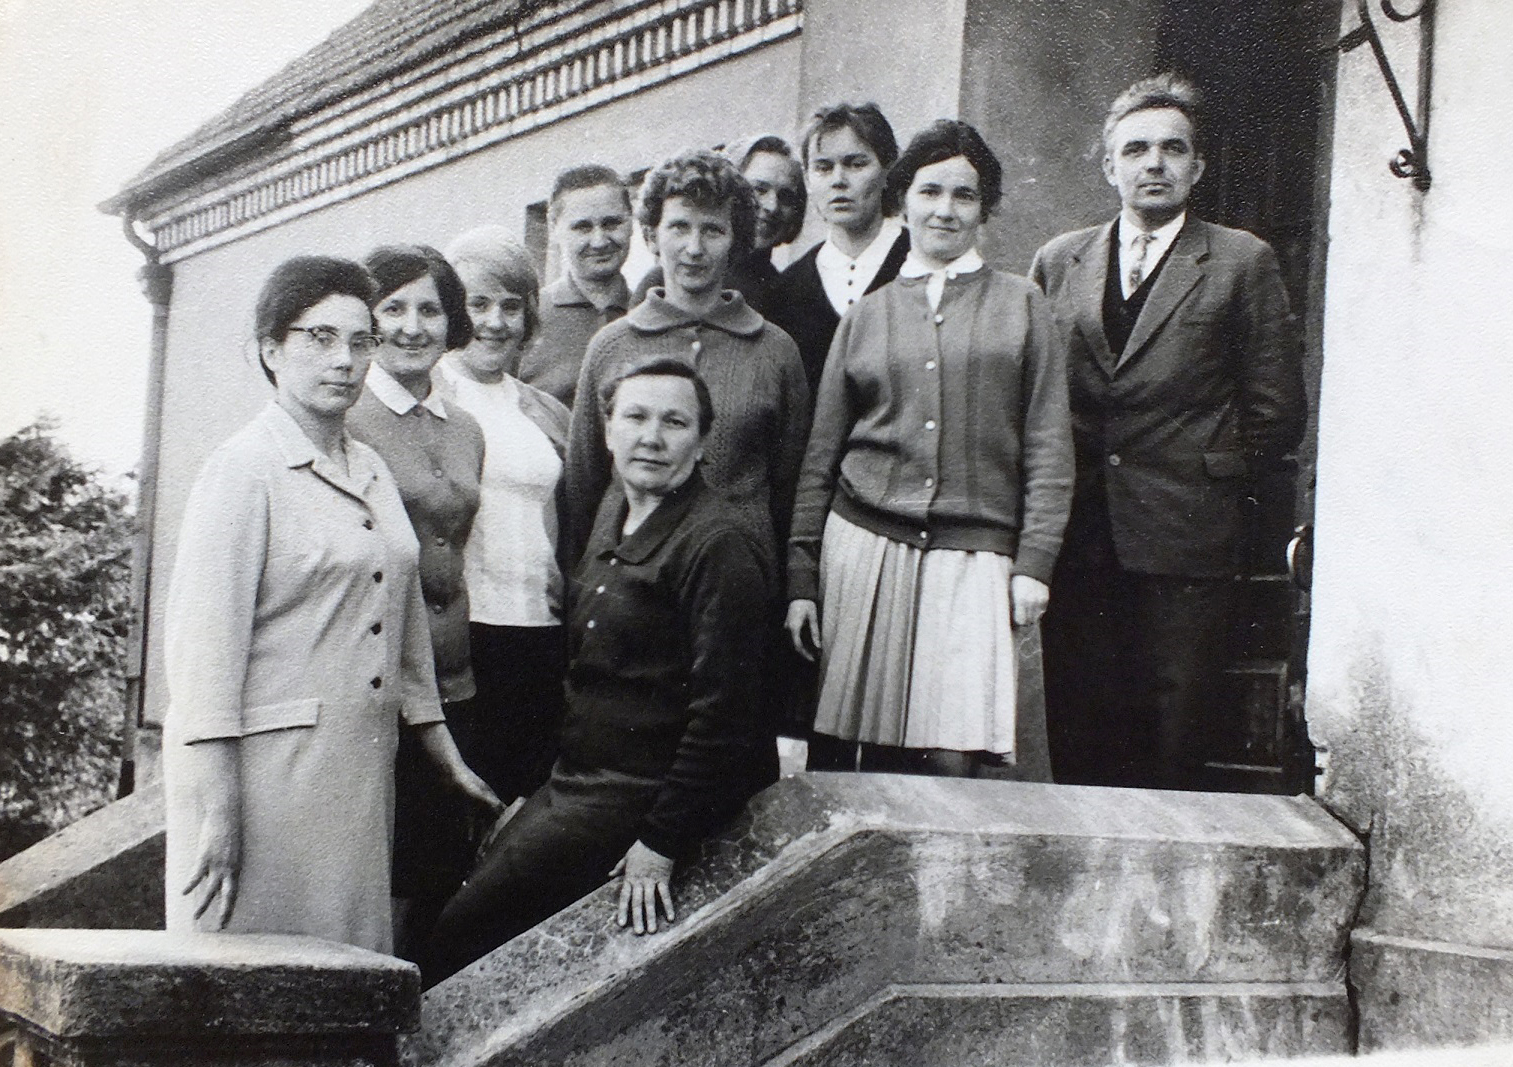 Kurnėnų mokytojai 1968 m. prie mokyklos. Antra iš dešinės – Aldona Miliuvienė.